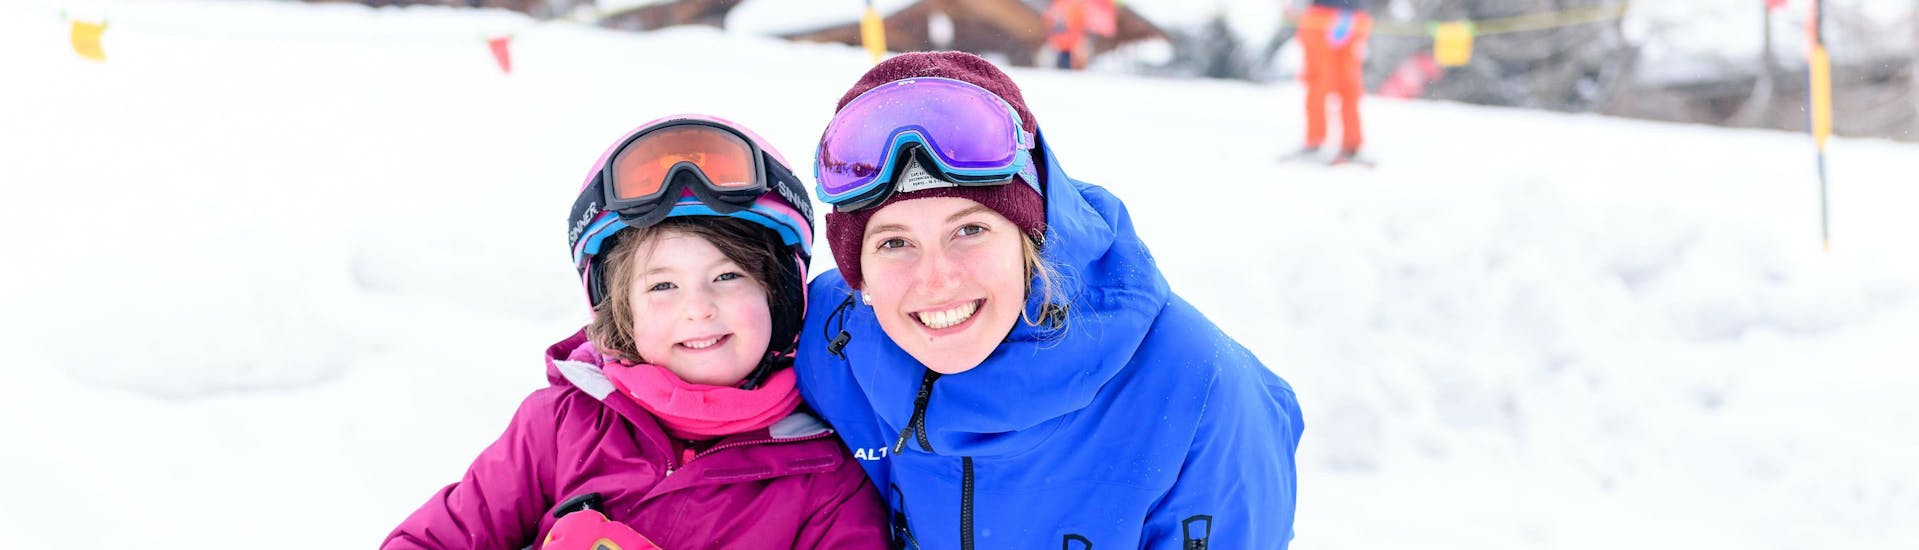 Privater Kinder-Skikurs für alle Altersgruppen in Gstaad.